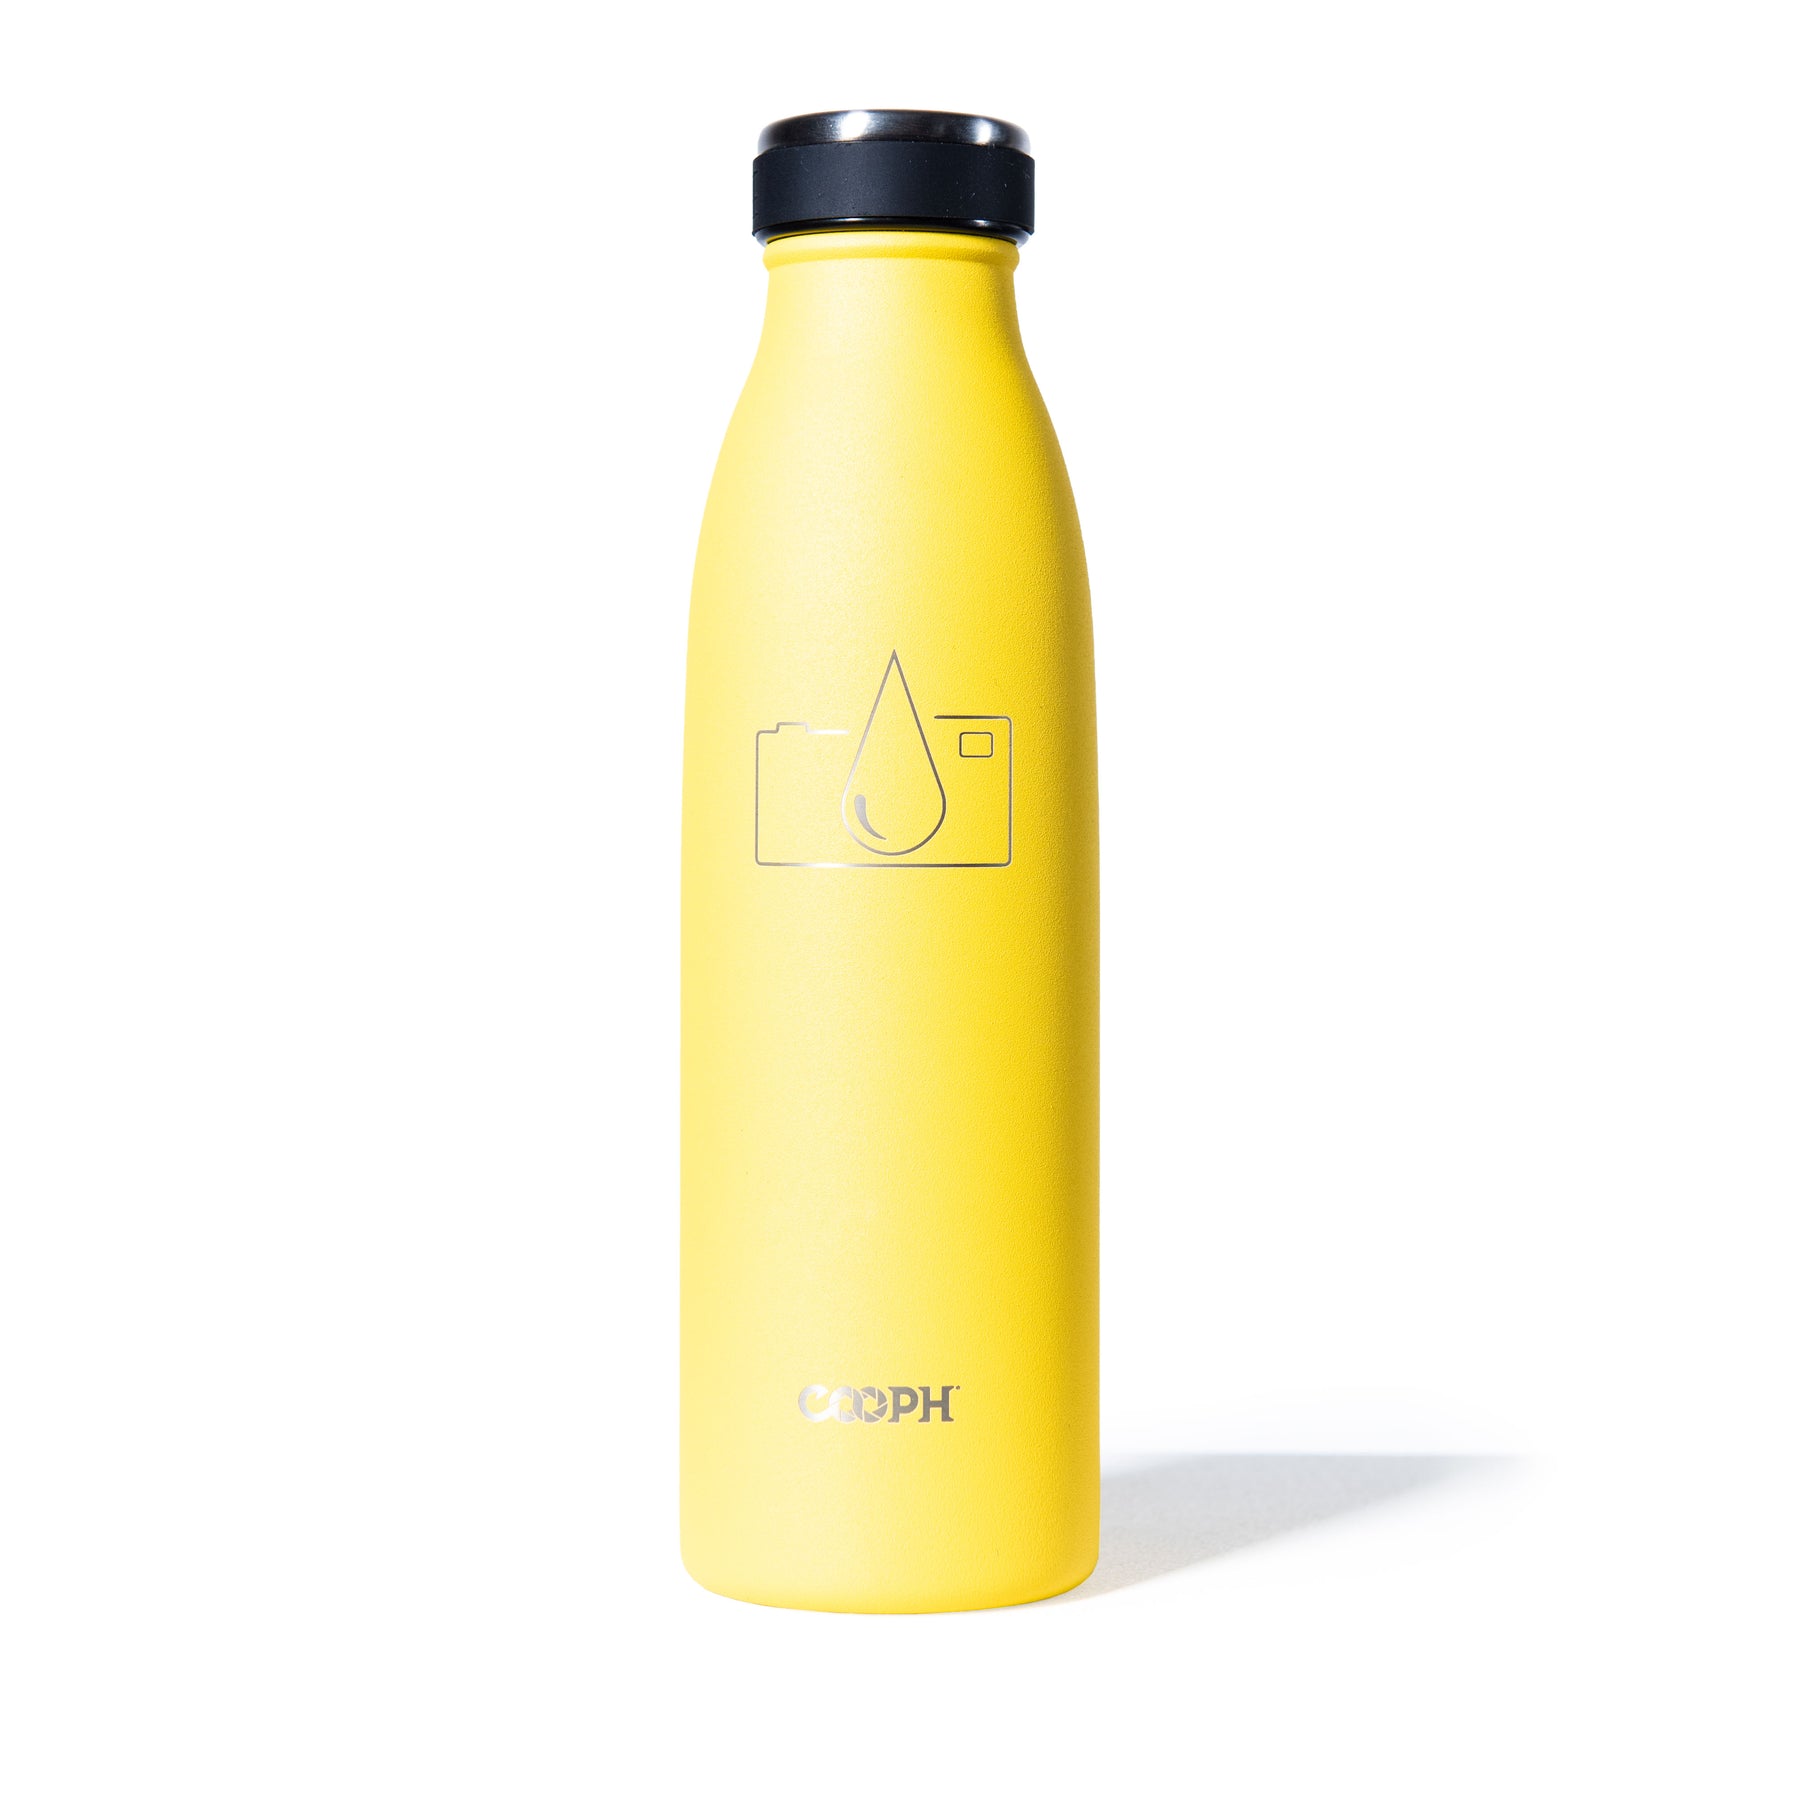 cooph-water-bottle-yellow- DSC3464 b7dcf5d5-15bd-4b4c-a3b2-5e1e9a8c361d